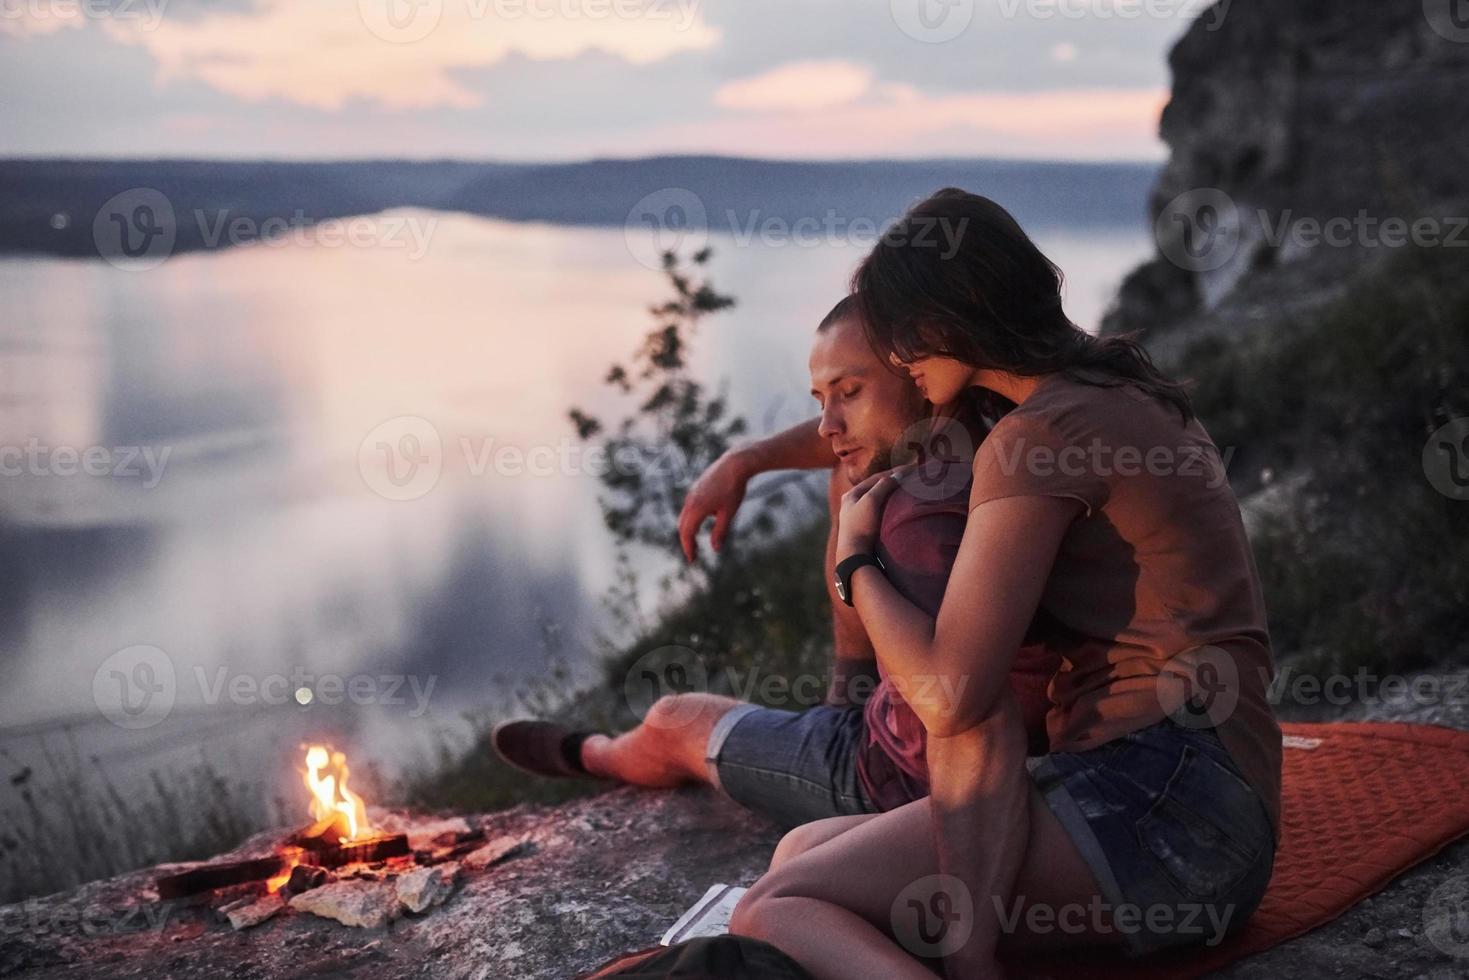 kramar par med ryggsäck sitter nära elden på toppen av berget njuter av utsikten kusten en flod eller sjö. resa längs berg och kust, frihet och aktivt livsstilskoncept foto